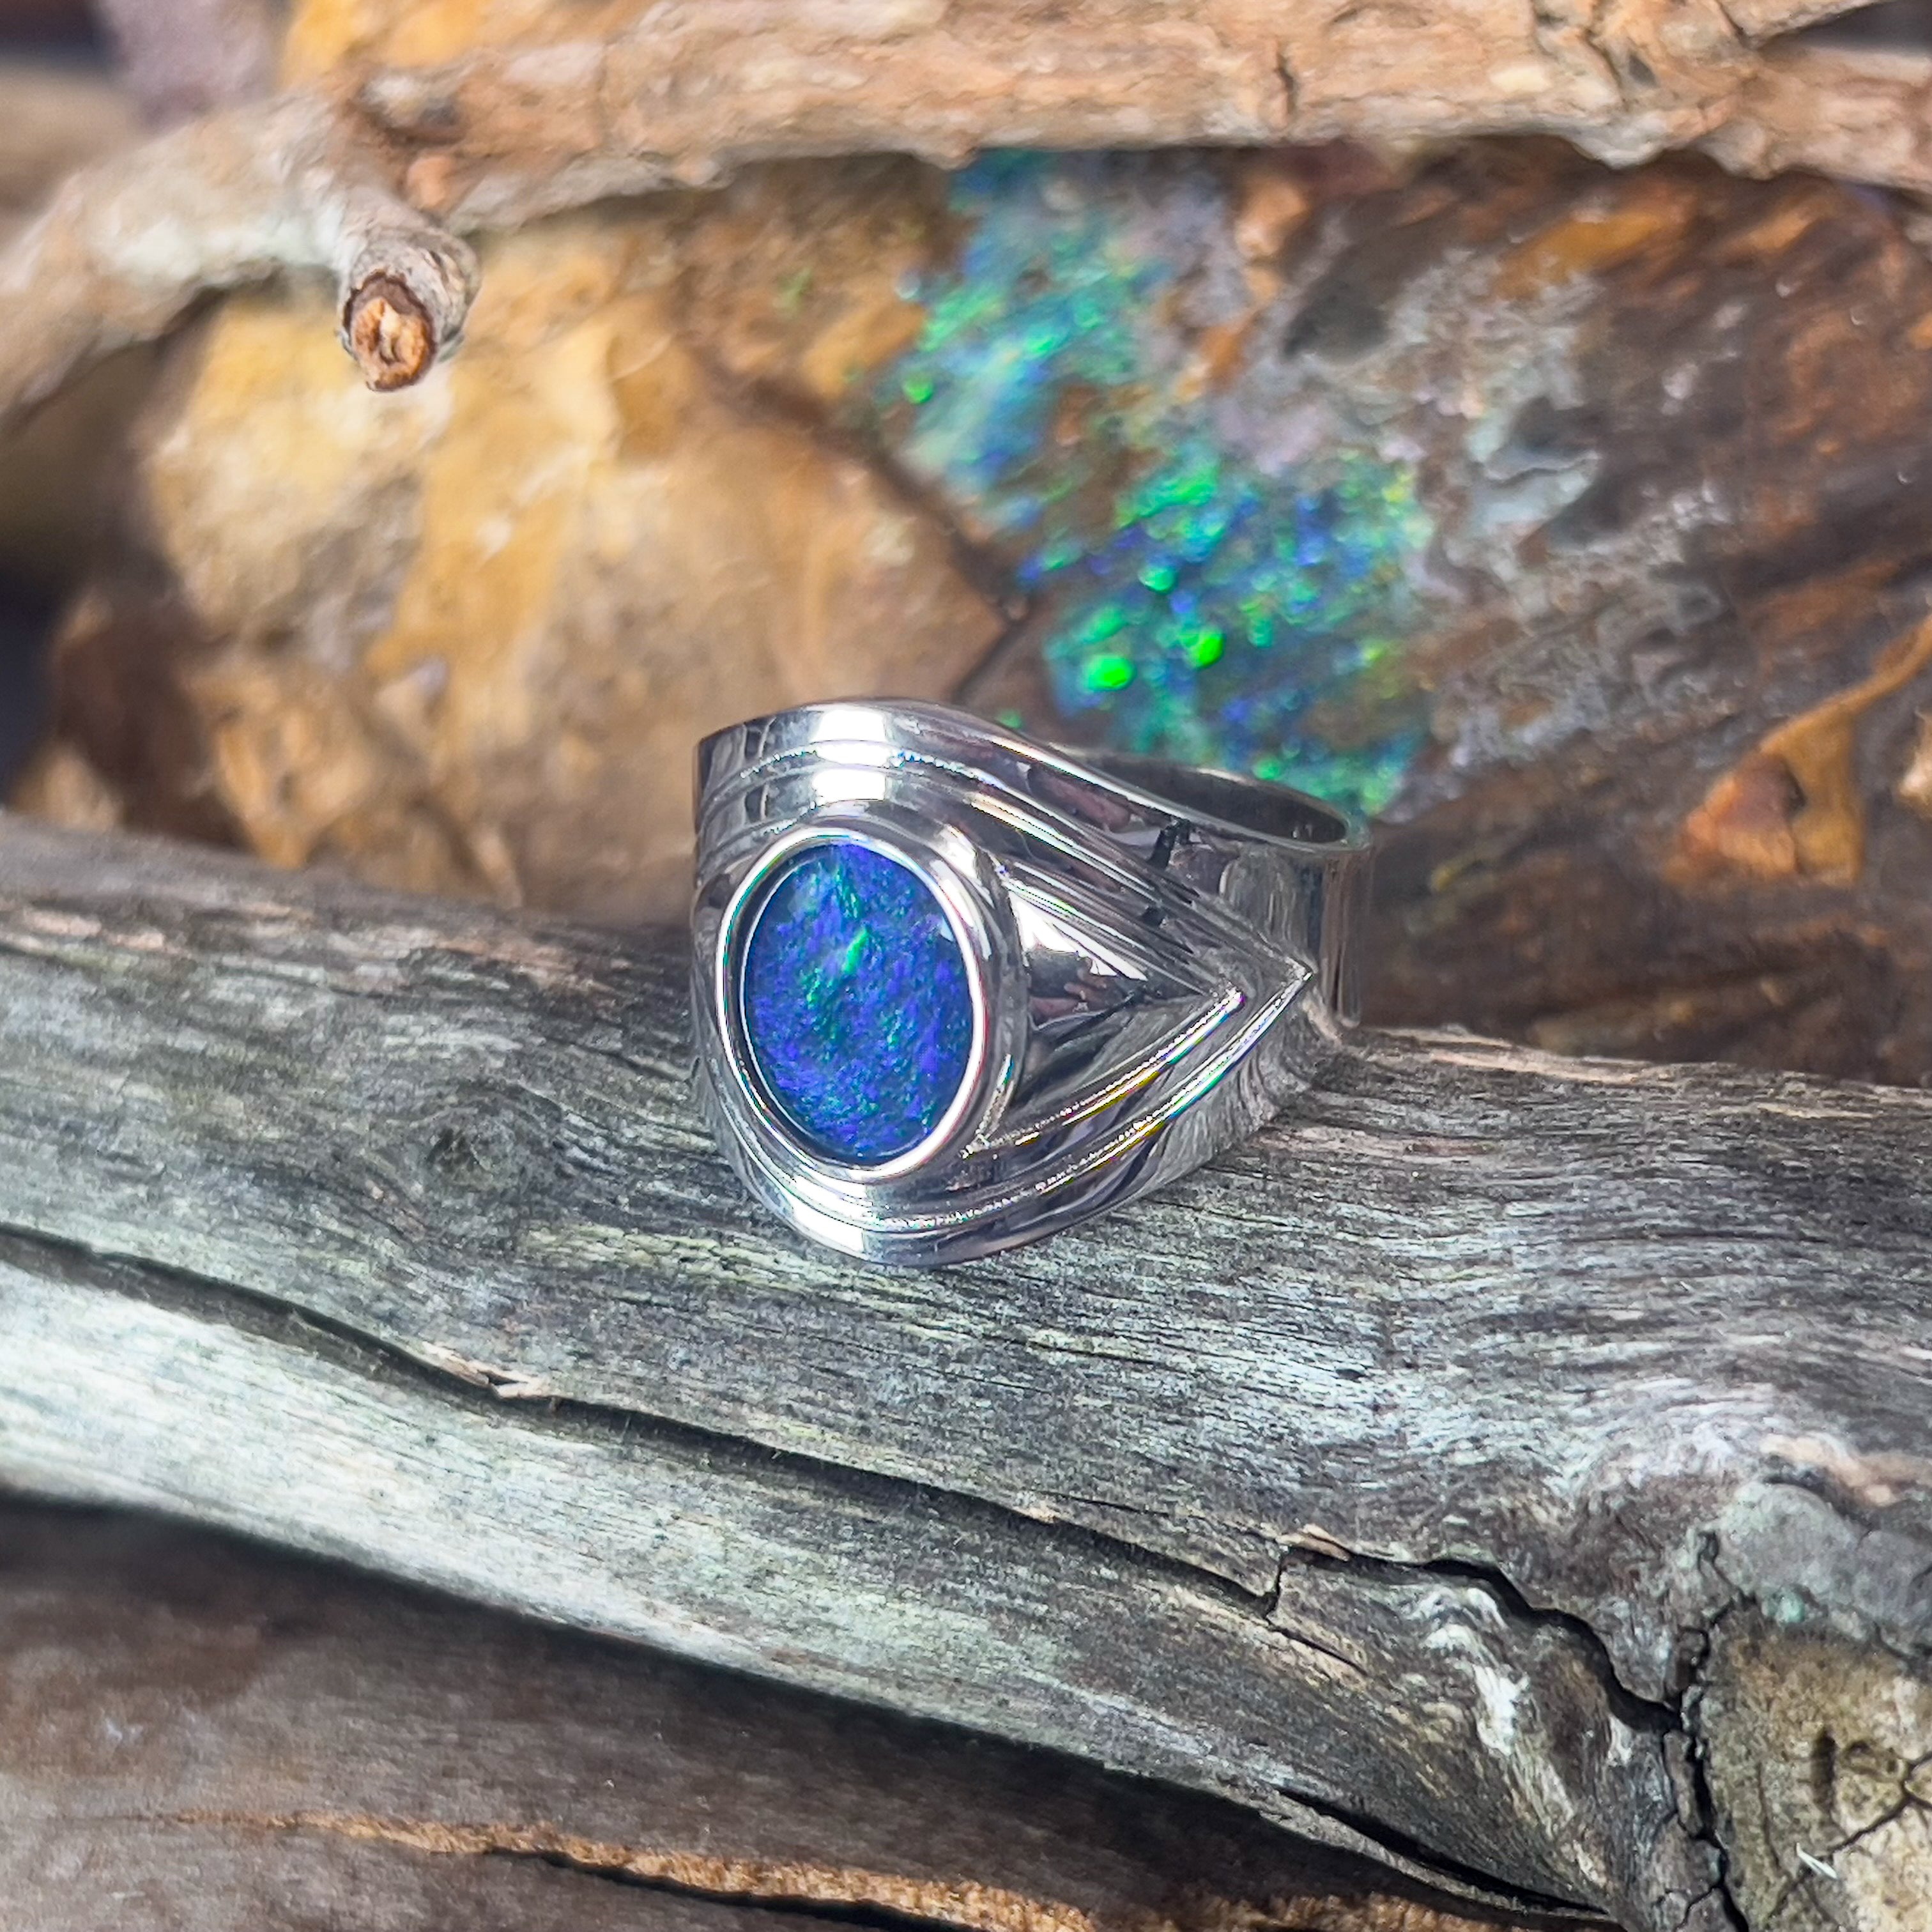 Sterling Silver Gents broad shaped ring with 11x9mm Opal Triplet bezel - Masterpiece Jewellery Opal & Gems Sydney Australia | Online Shop